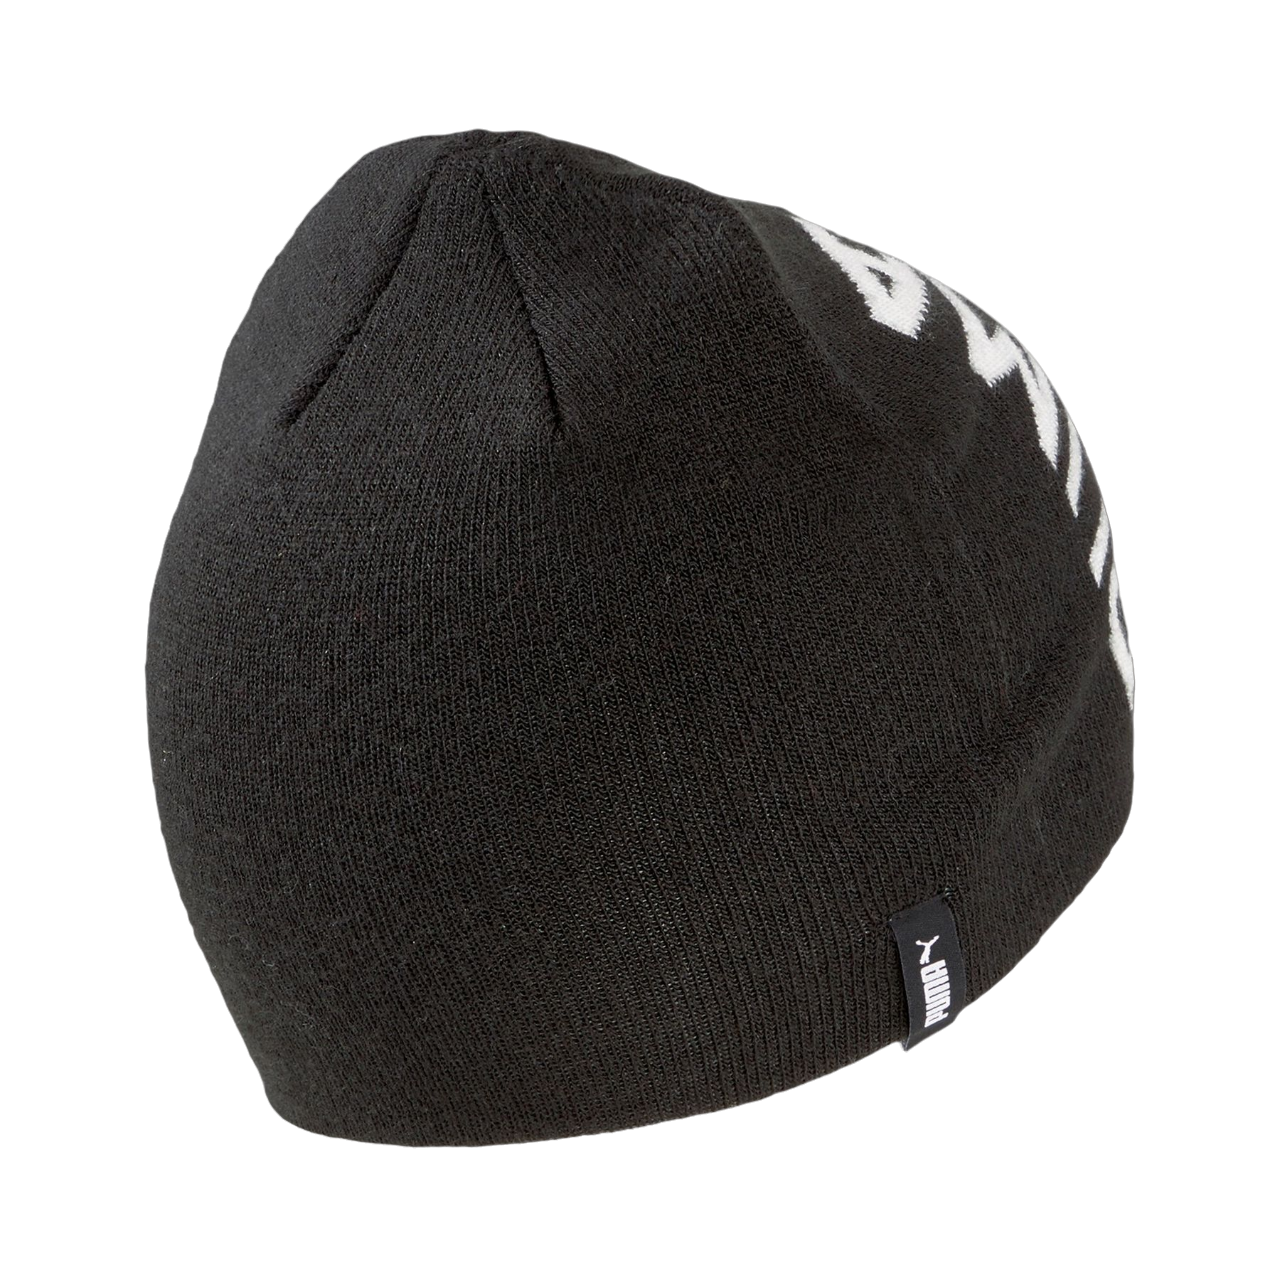 Puma cappello a cuffia con logo grande 023461-01 nero. Taglia unica –  Sportiamo